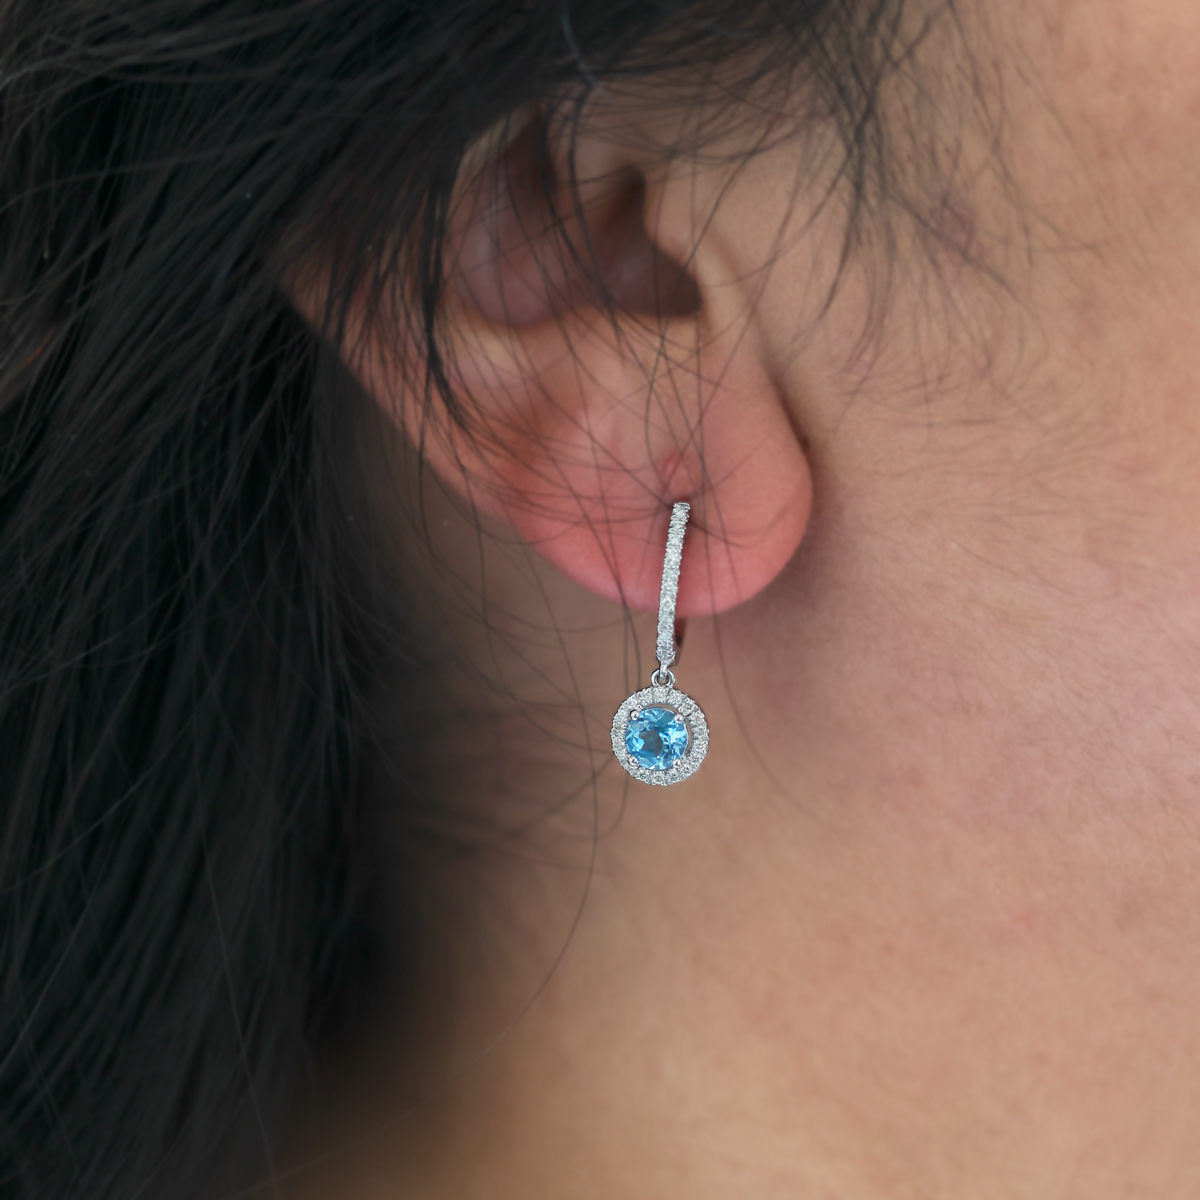 Natural London Blue Topaz and Diamond Dangle Earrings, 14k White Gold